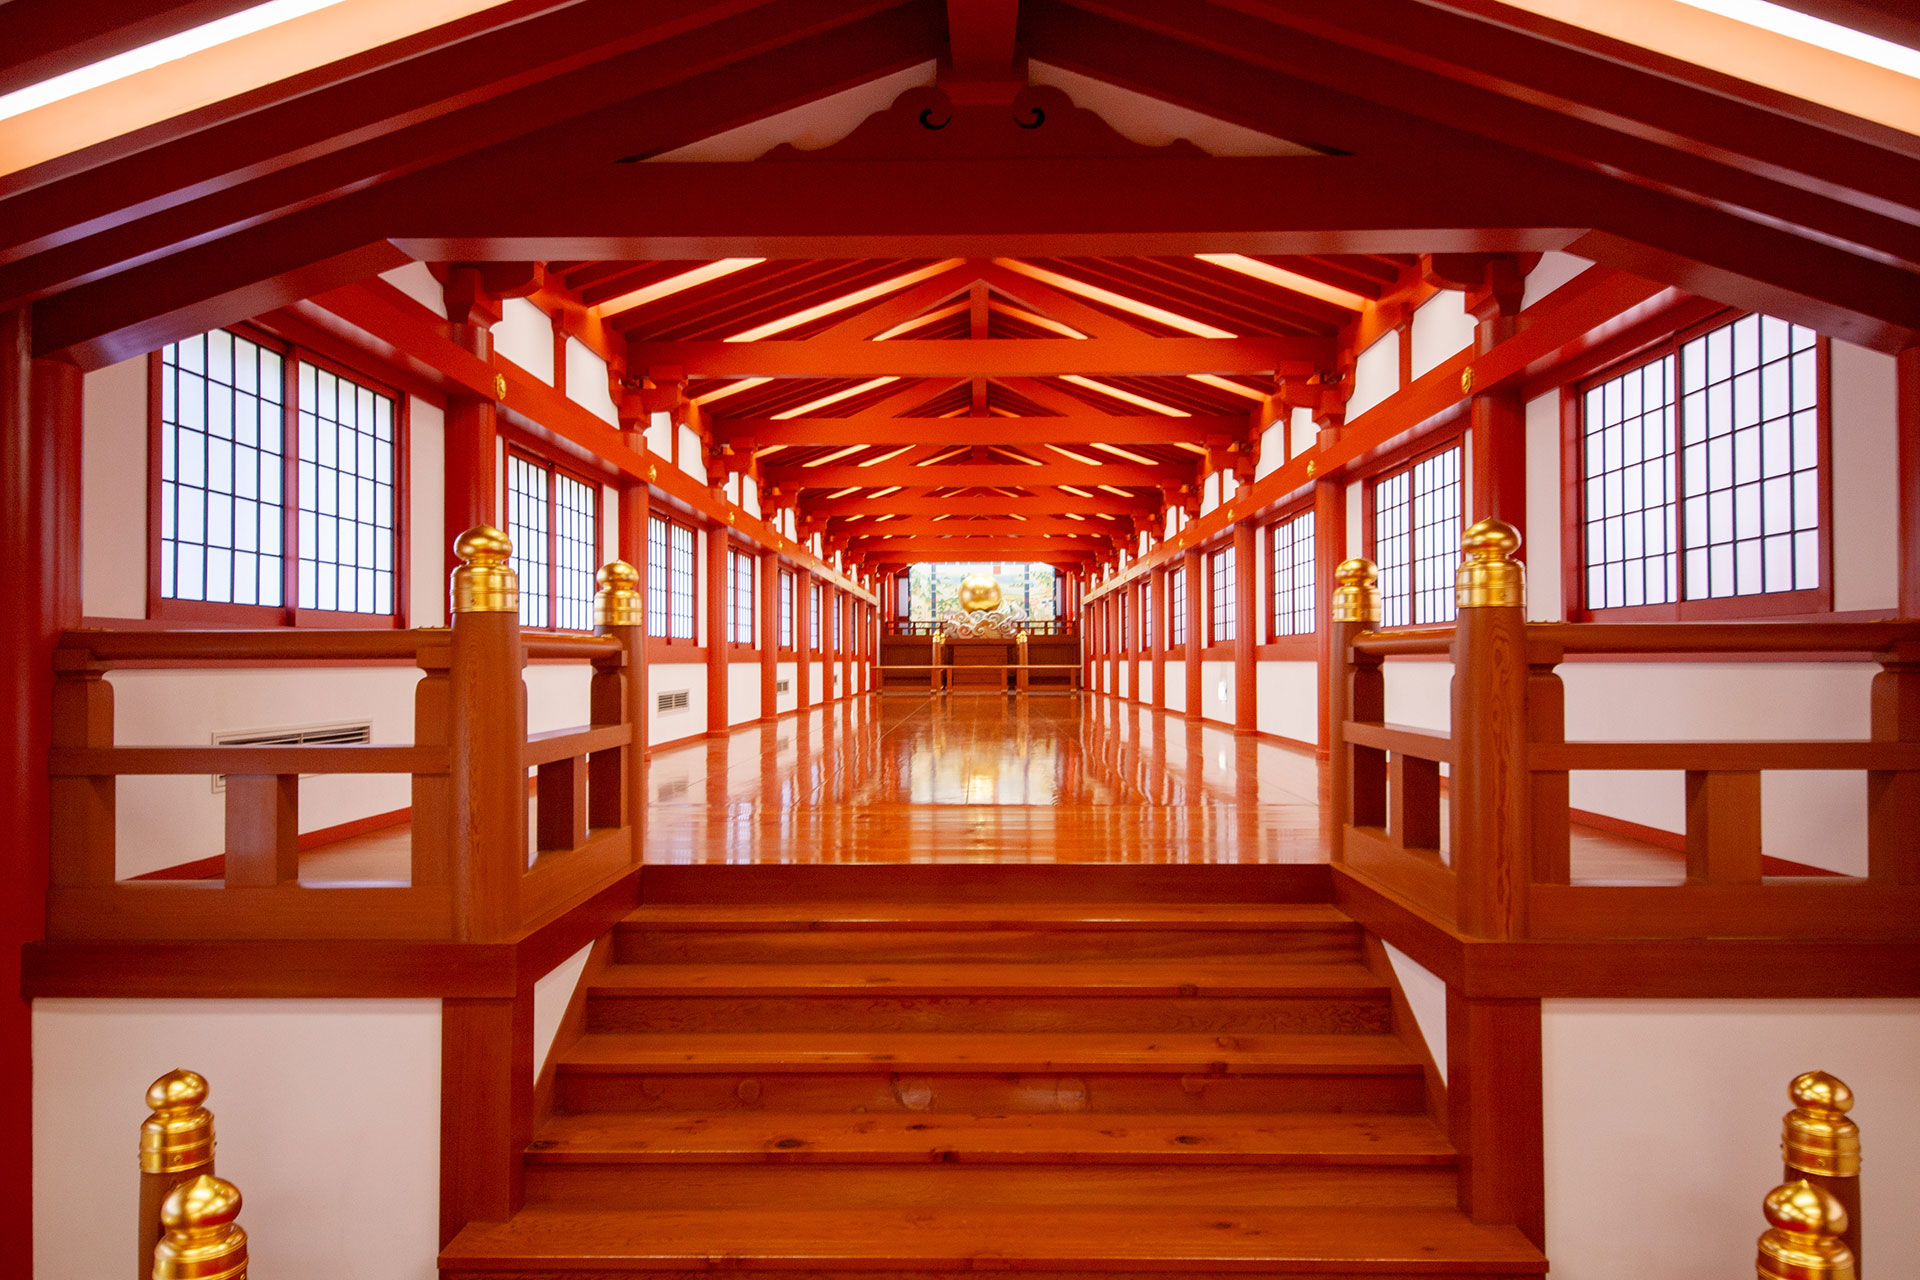 企画展「万博と仏教」にて「樅の木廊下」が紹介されます